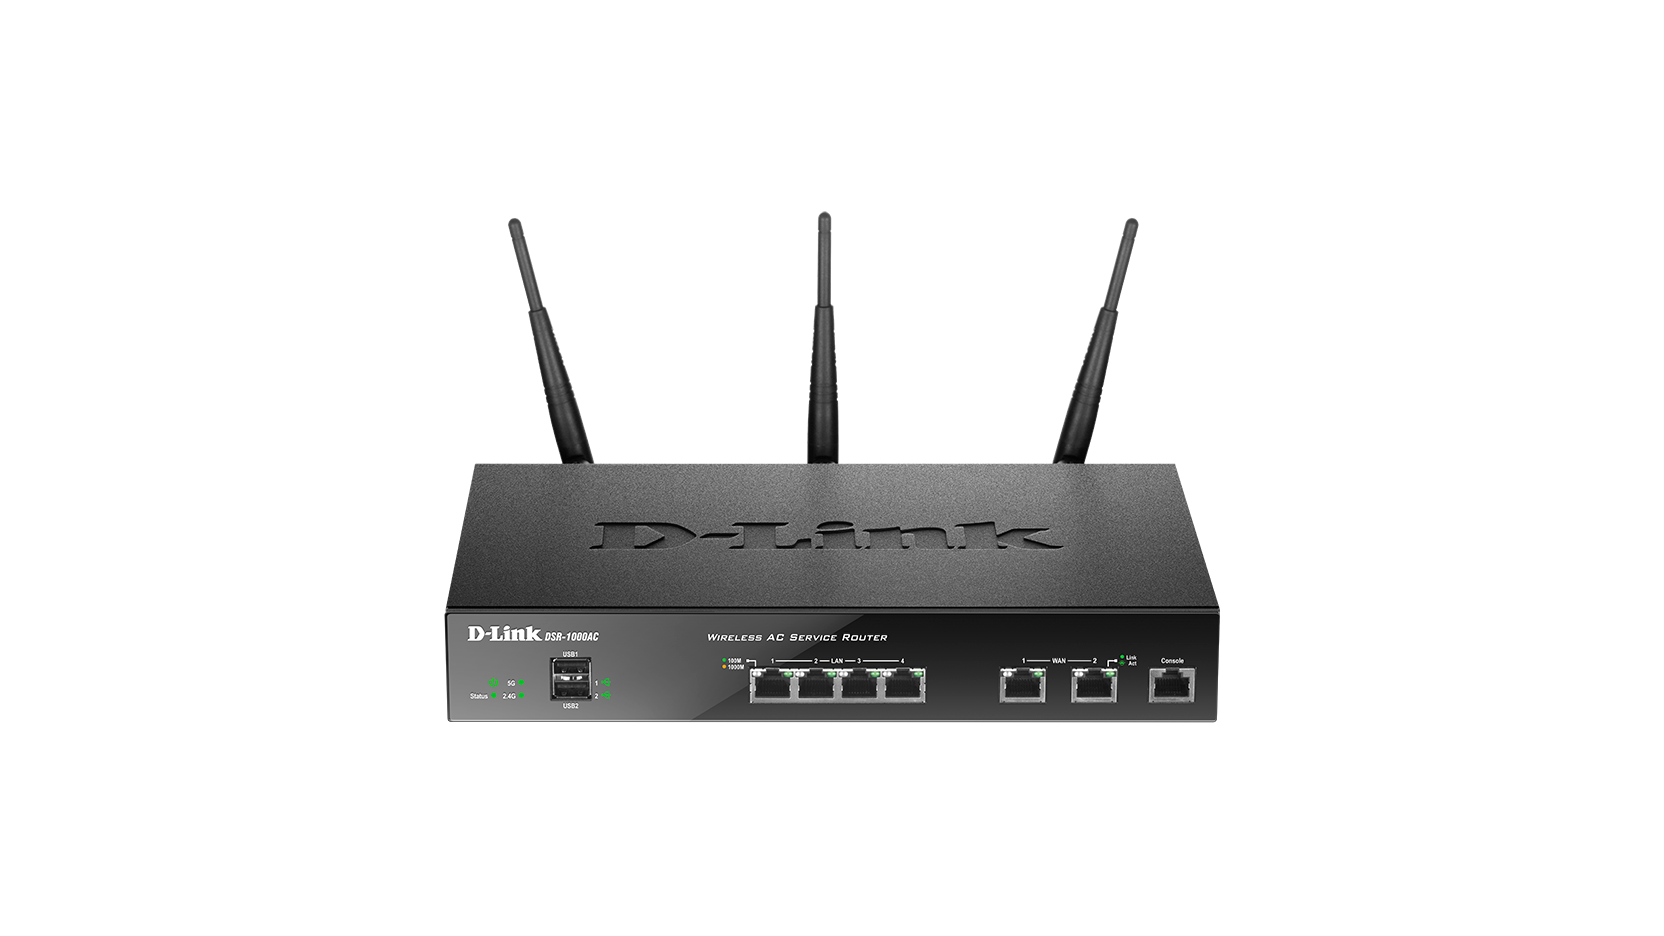 wireless ac router vpn pass